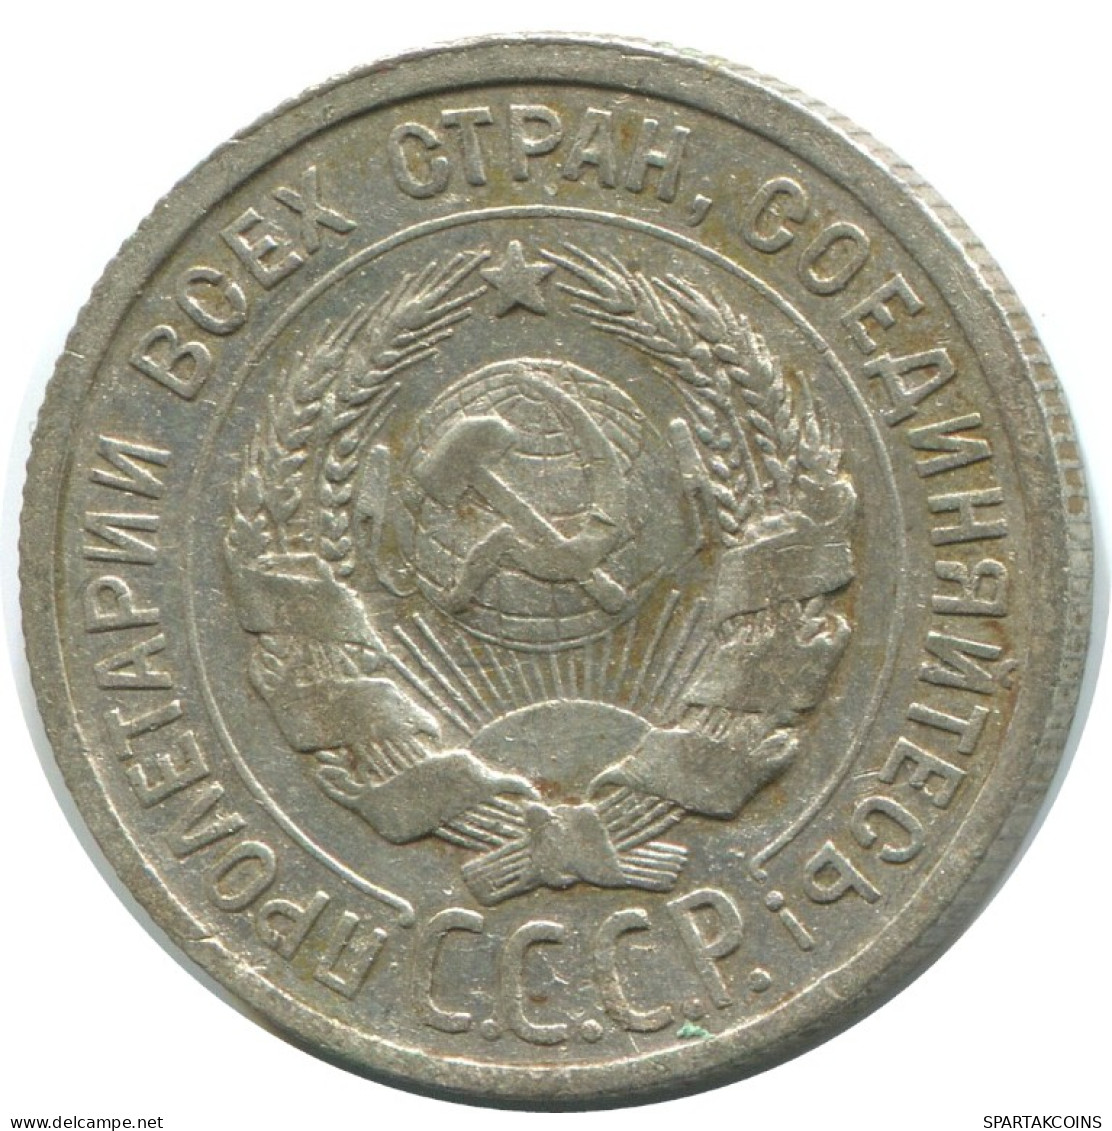 20 KOPEKS 1924 RUSSLAND RUSSIA USSR SILBER Münze HIGH GRADE #AF278.4.D.A - Russia